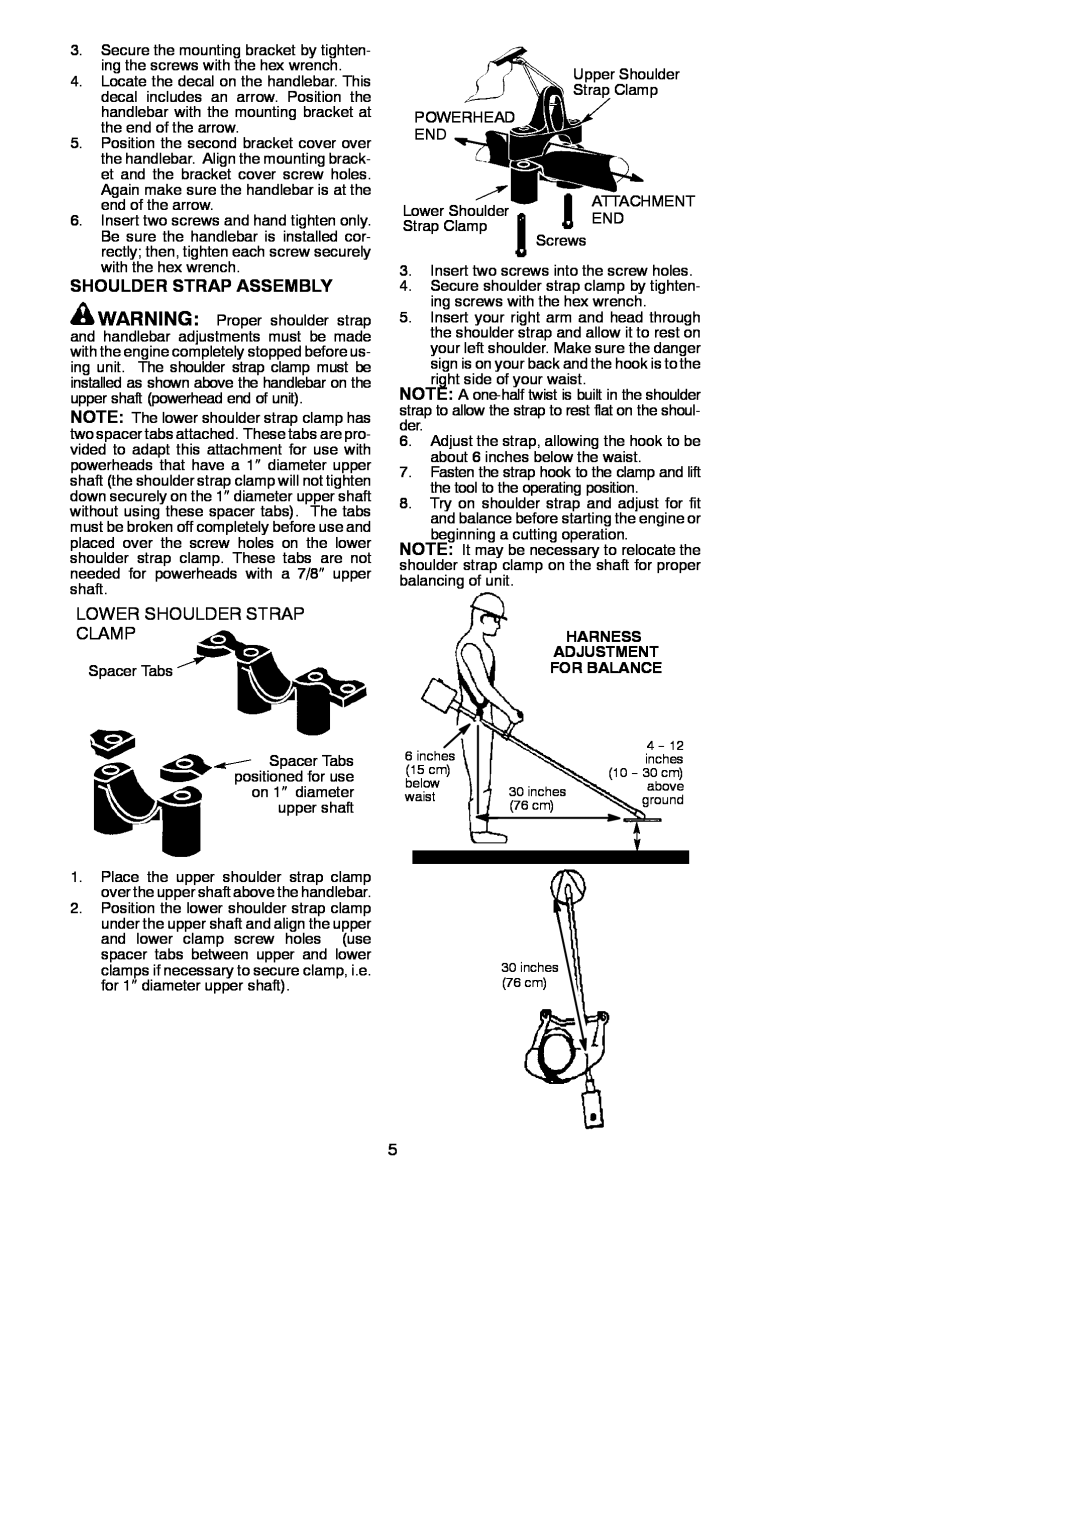 Poulan 530164830 instruction manual Shoulder Strap Assembly, Lower Shoulder Strap Clamp, Harness Adjustment For Balance 